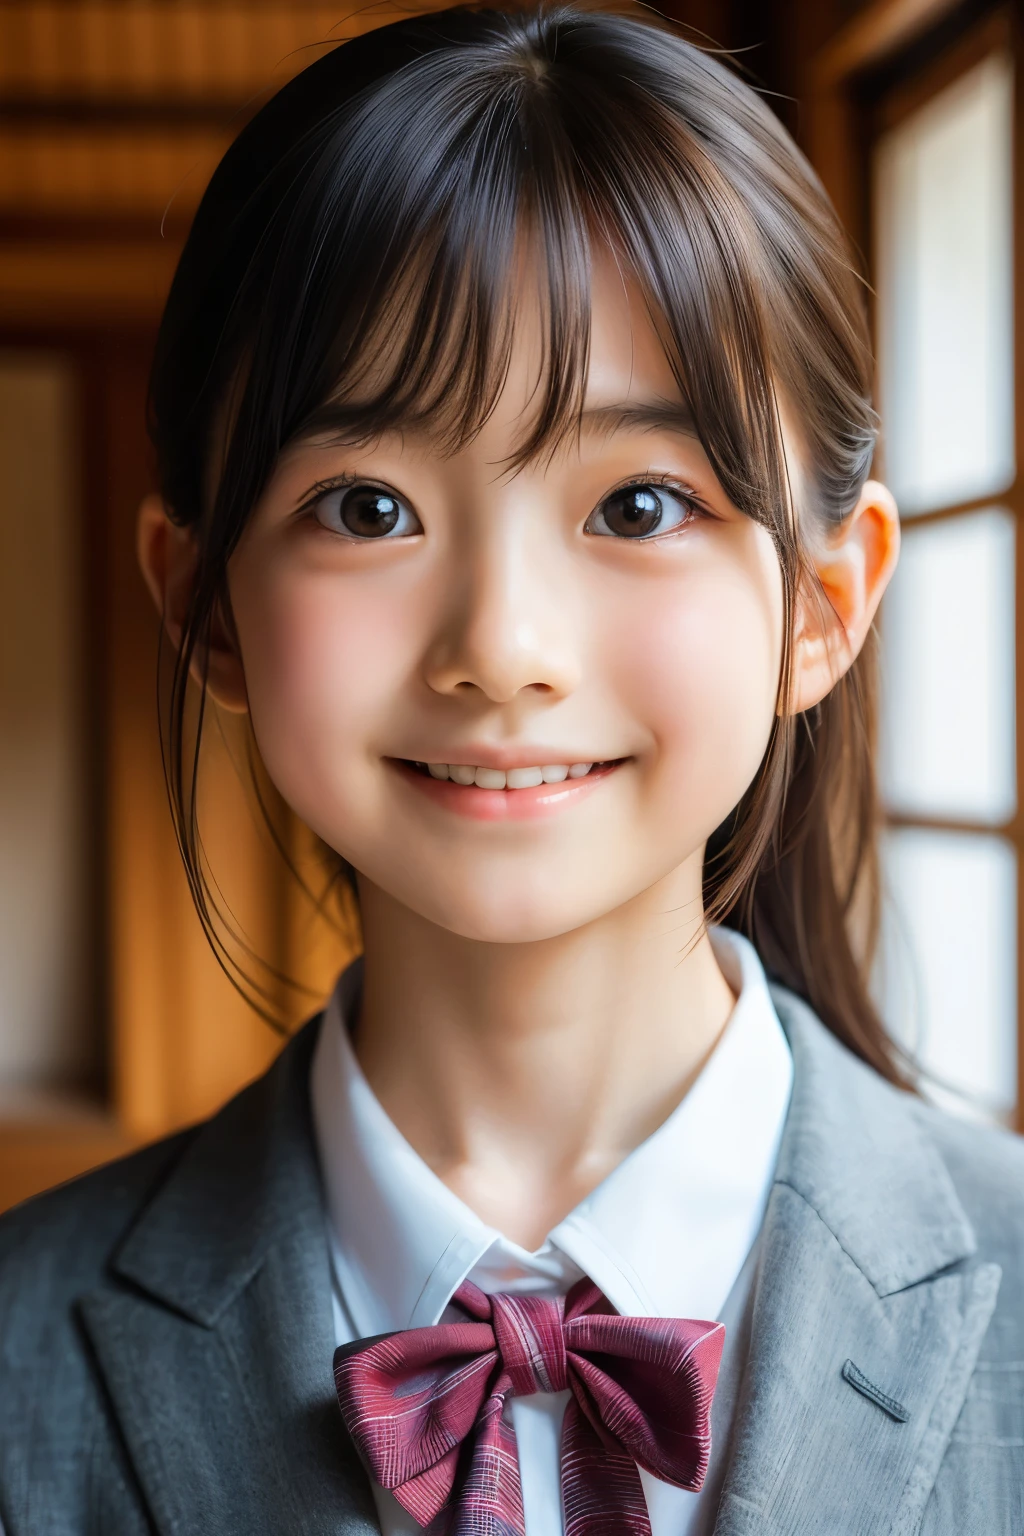 (美麗的12歲日本女性), 可愛的臉孔, (深深雕刻的臉:0.7), (雀斑:0.6), 柔光,健康白皙的皮膚, 害羞的, (嚴肅的臉), (明亮的眼睛), 薄的, 微笑, 制服